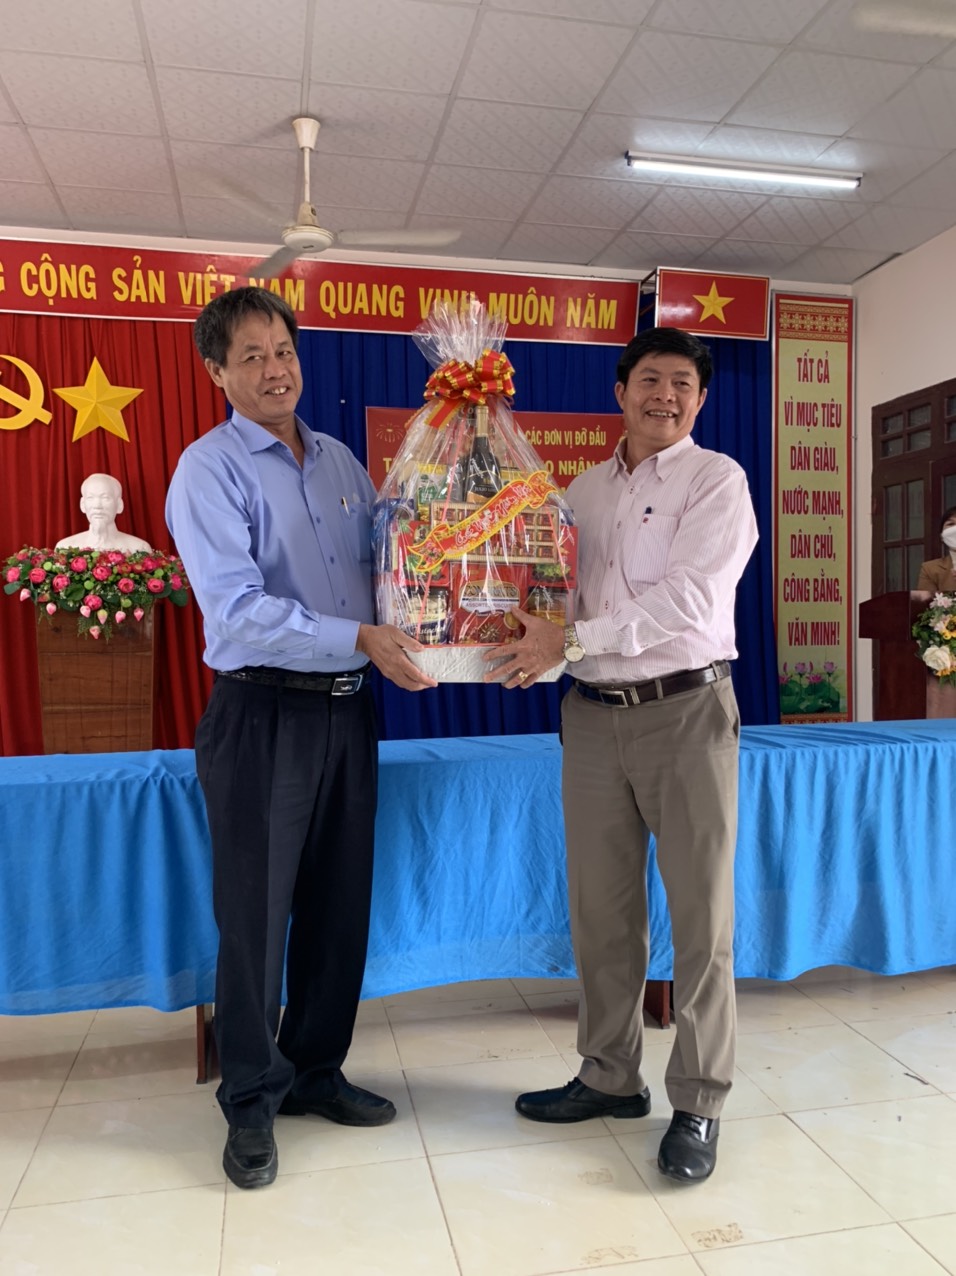  Đại diện nhóm tặng quà cho xã Ba Cụm Nam.